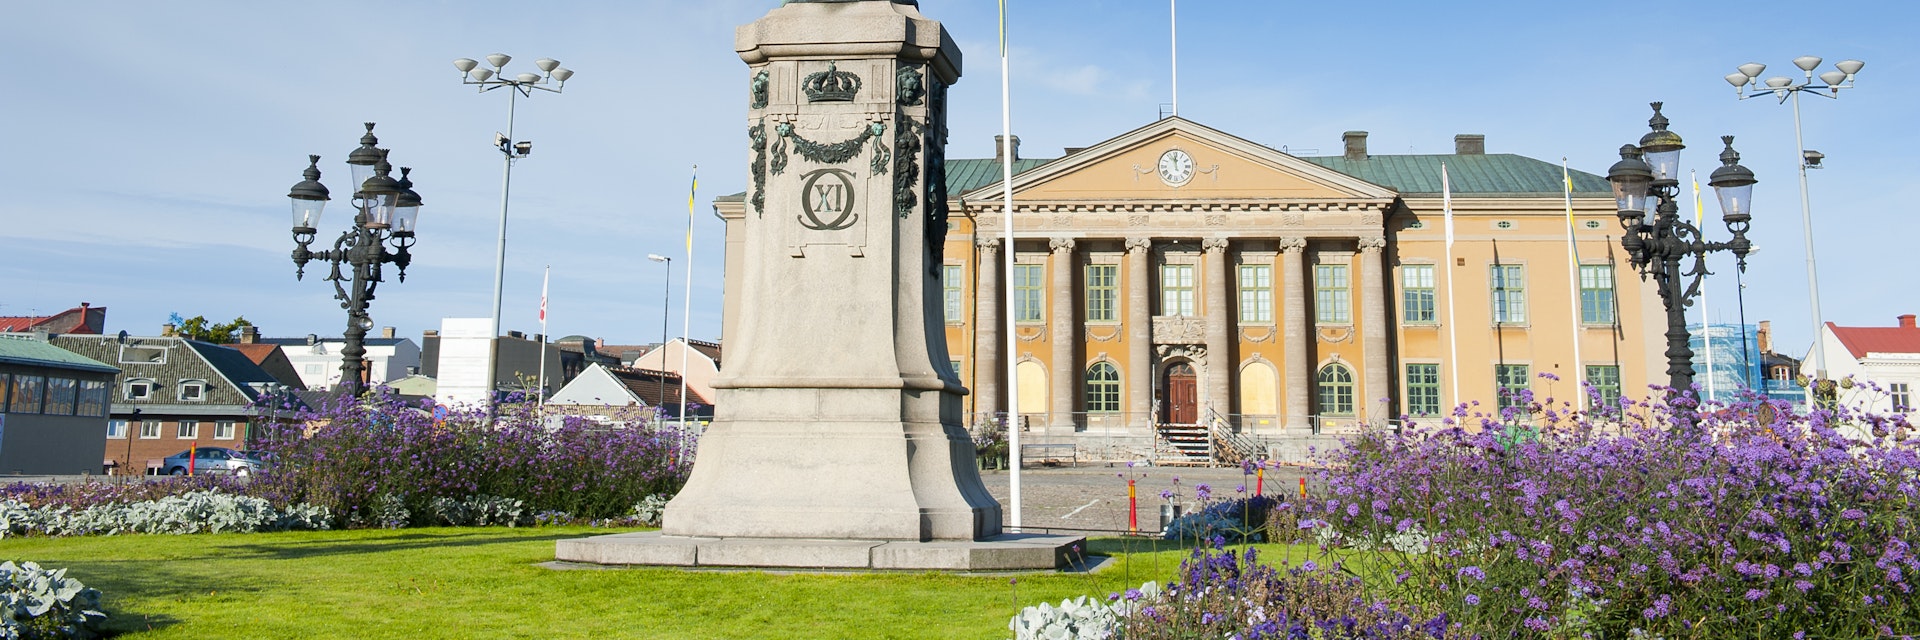 Market square in Karlskrona.